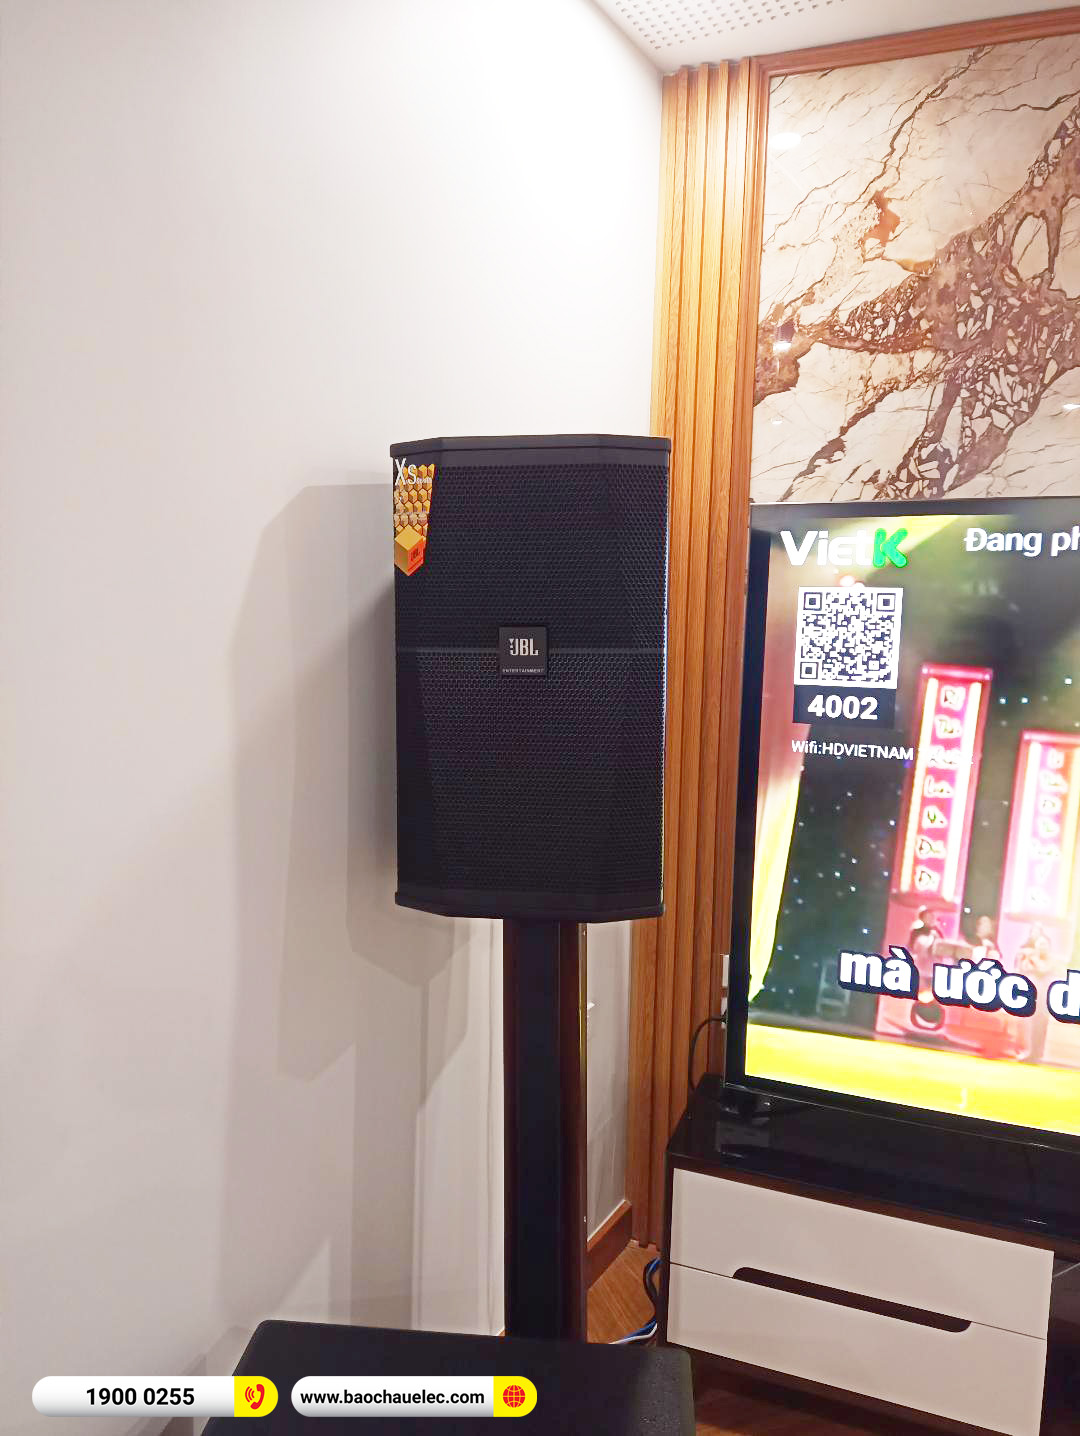 Lắp đặt dàn karaoke JBL hơn 95tr cho anh Dũng tại Hà Nội